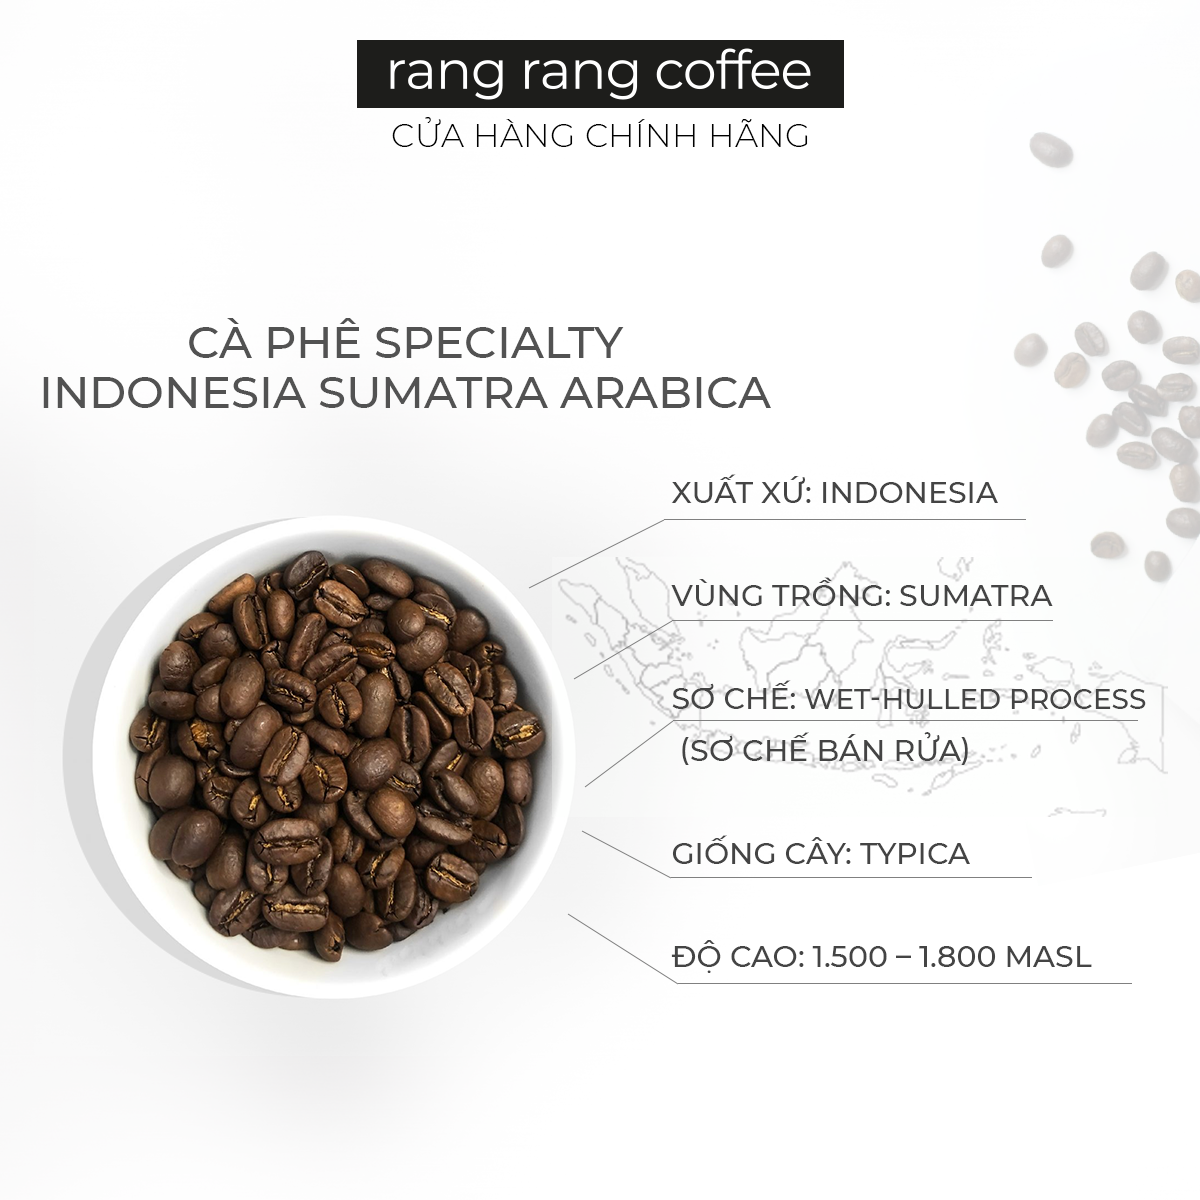 [Specialty coffee 500gr] Cà Phê Rang Xay Nguyên Chất Indonesia Ateng - Hạt Arabica Cao Cấp, Vị Choco, Quả Hạch rang rang coffee 500gr